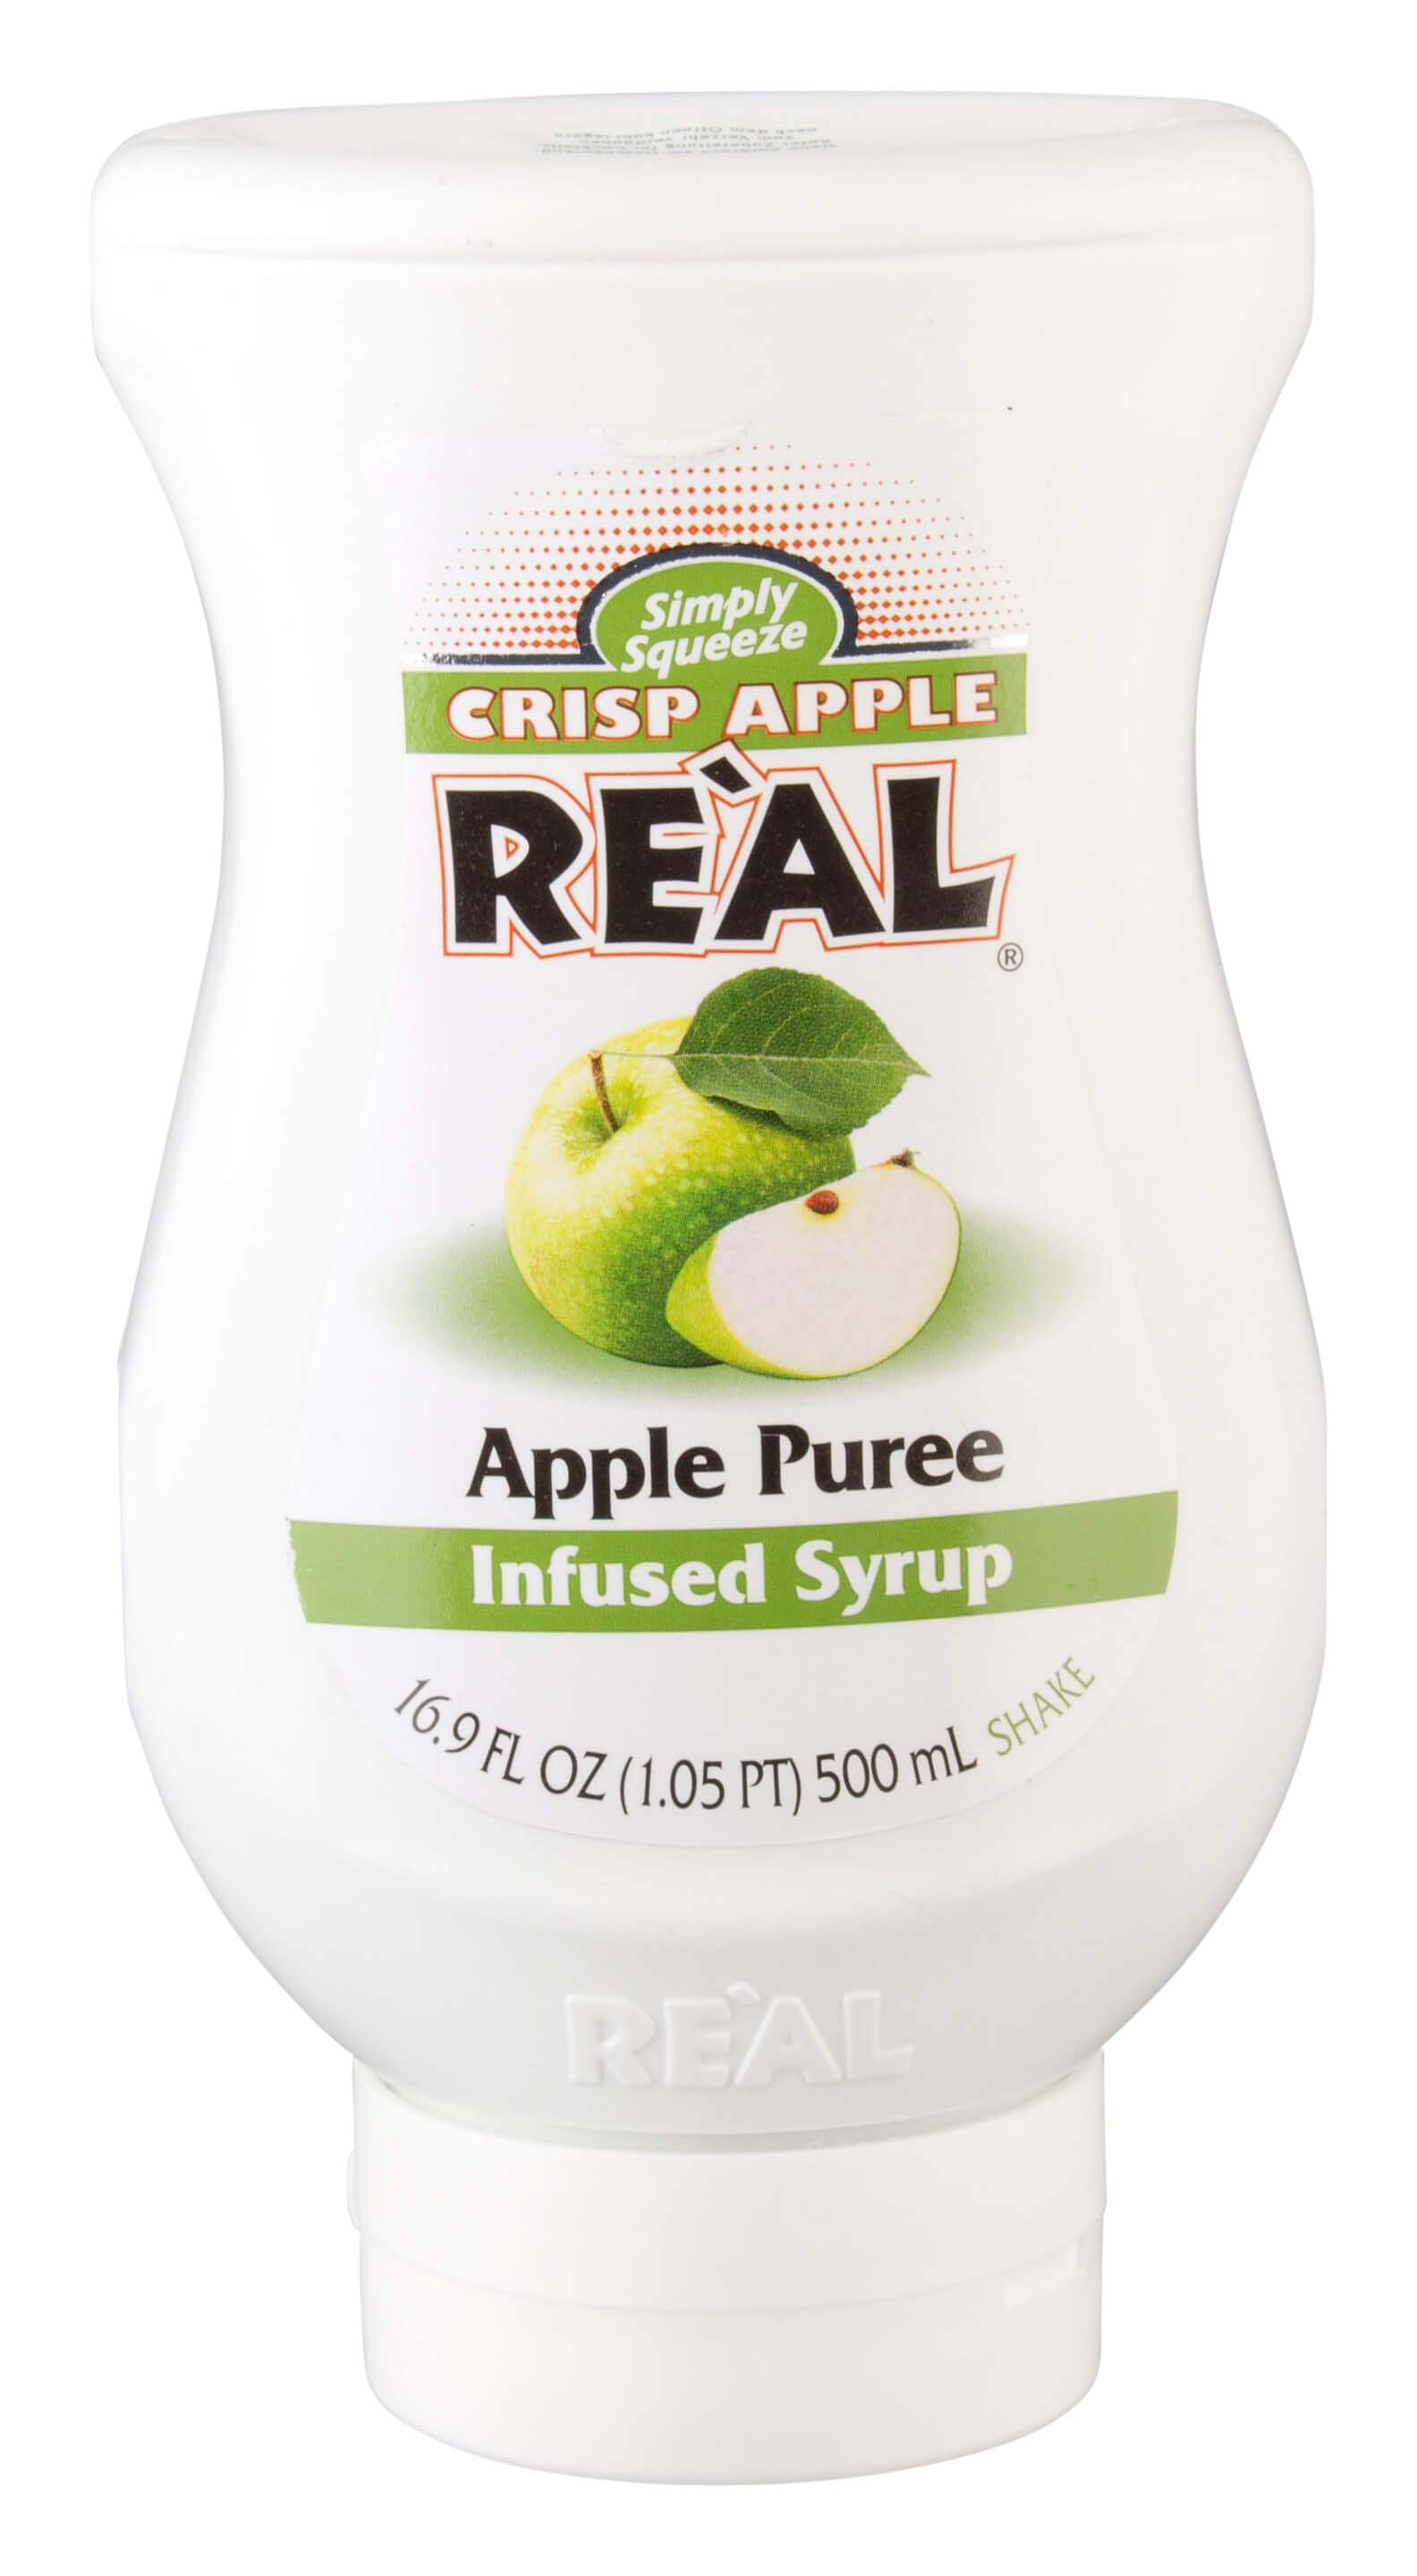 Crisp Apple Real - apple syrup (500ml)